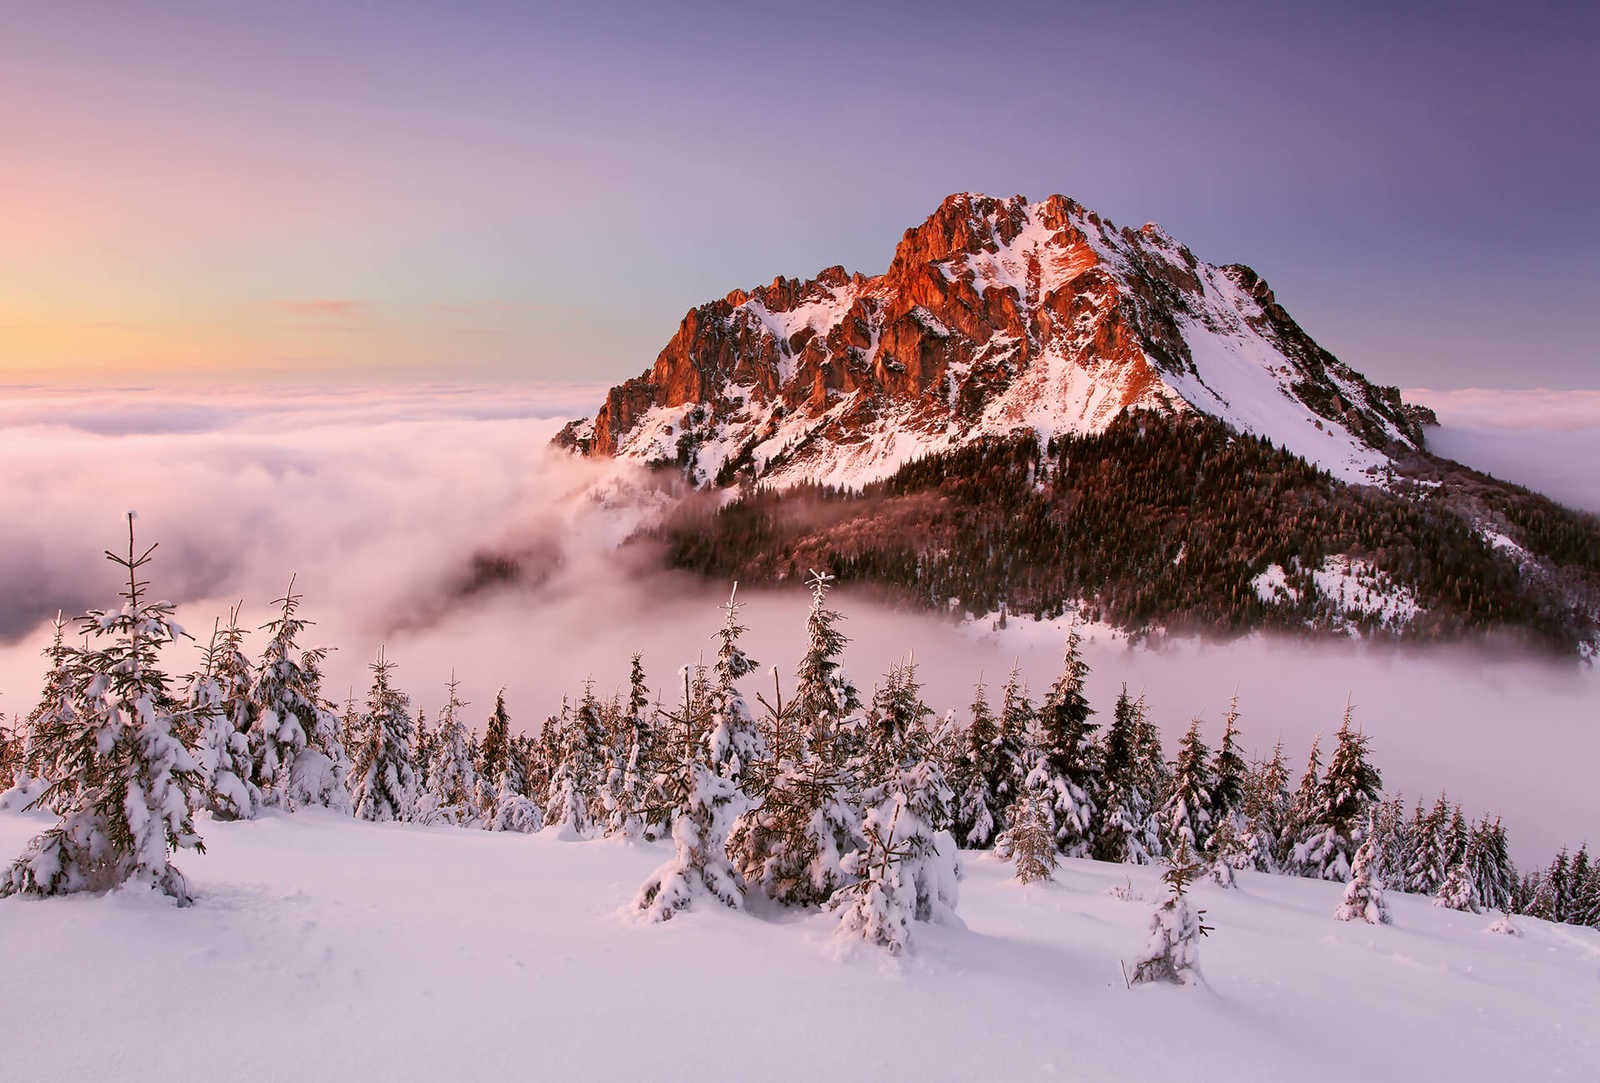 Fototapete Bergspitze mit Schnee – Weiß, Braun, Grün
